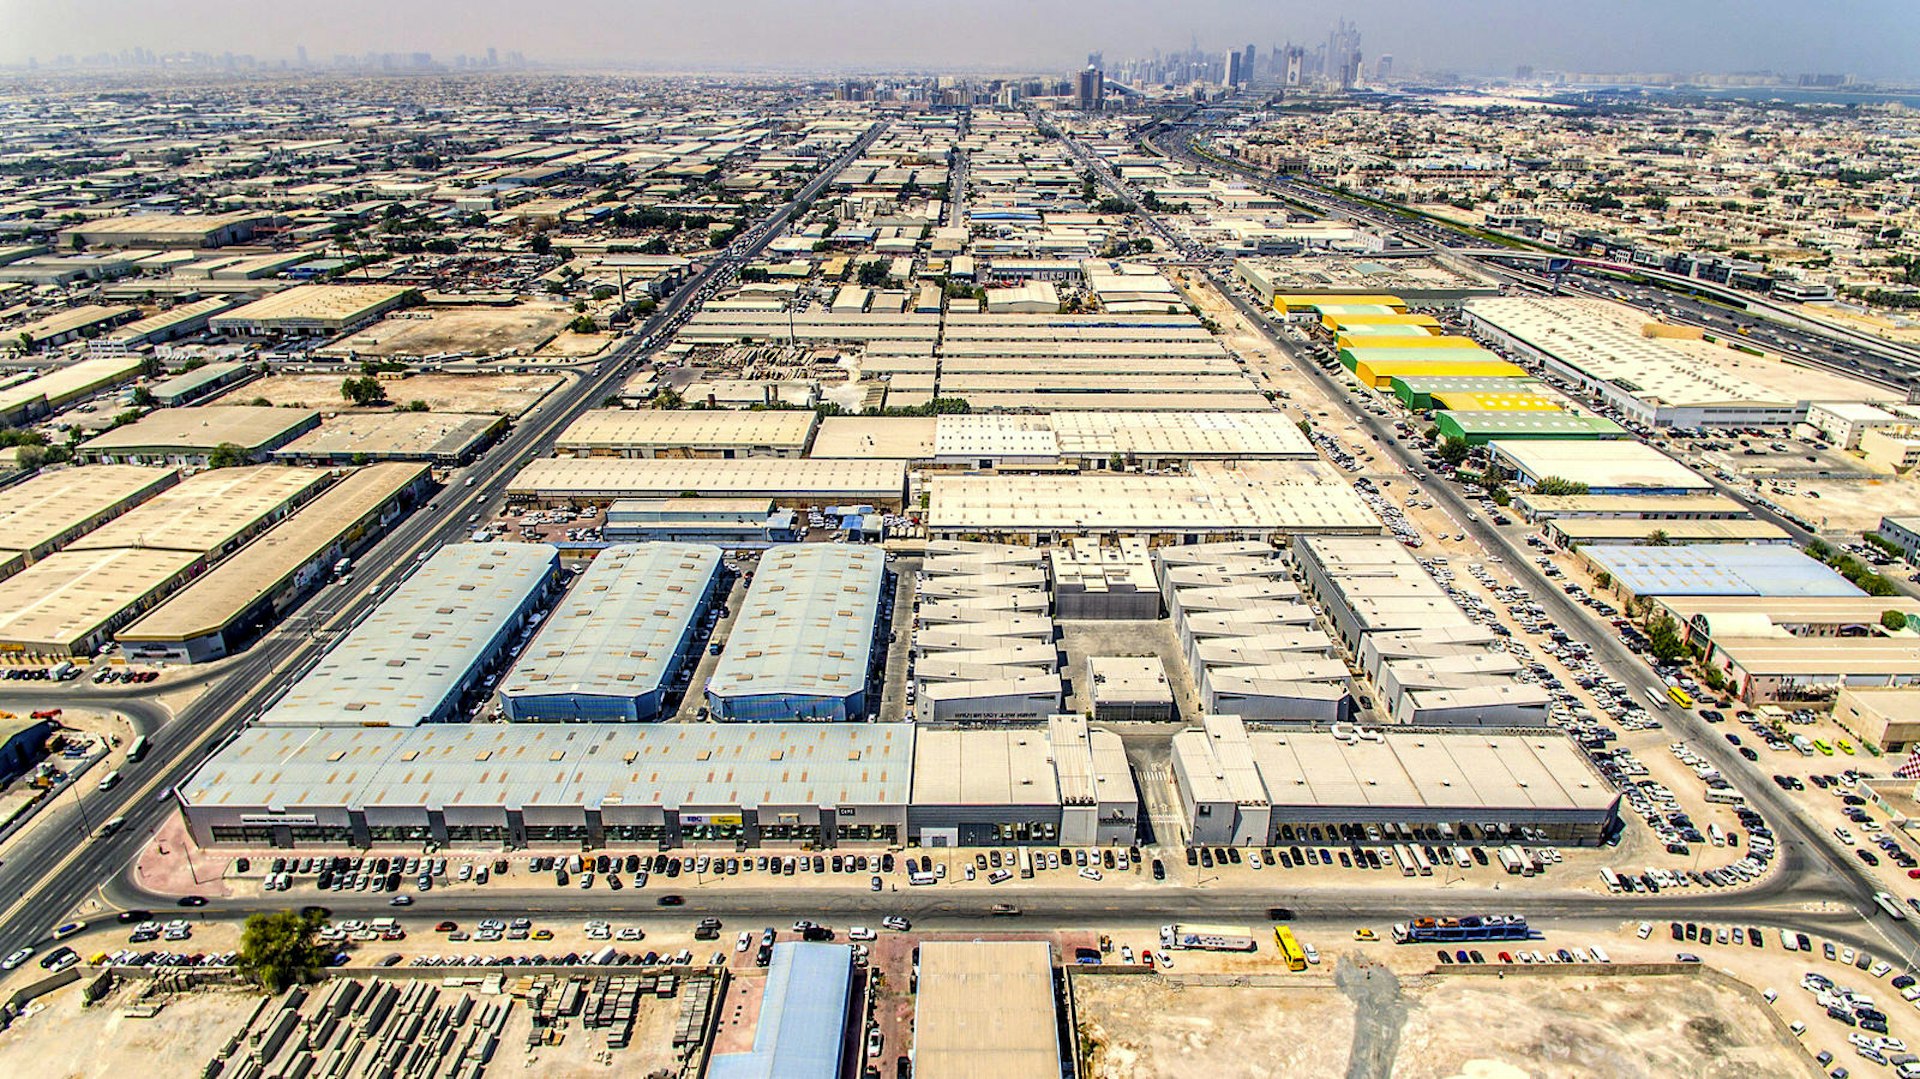 Aerial view of Alserkal Avenue, Dubai, United Arab Emirates